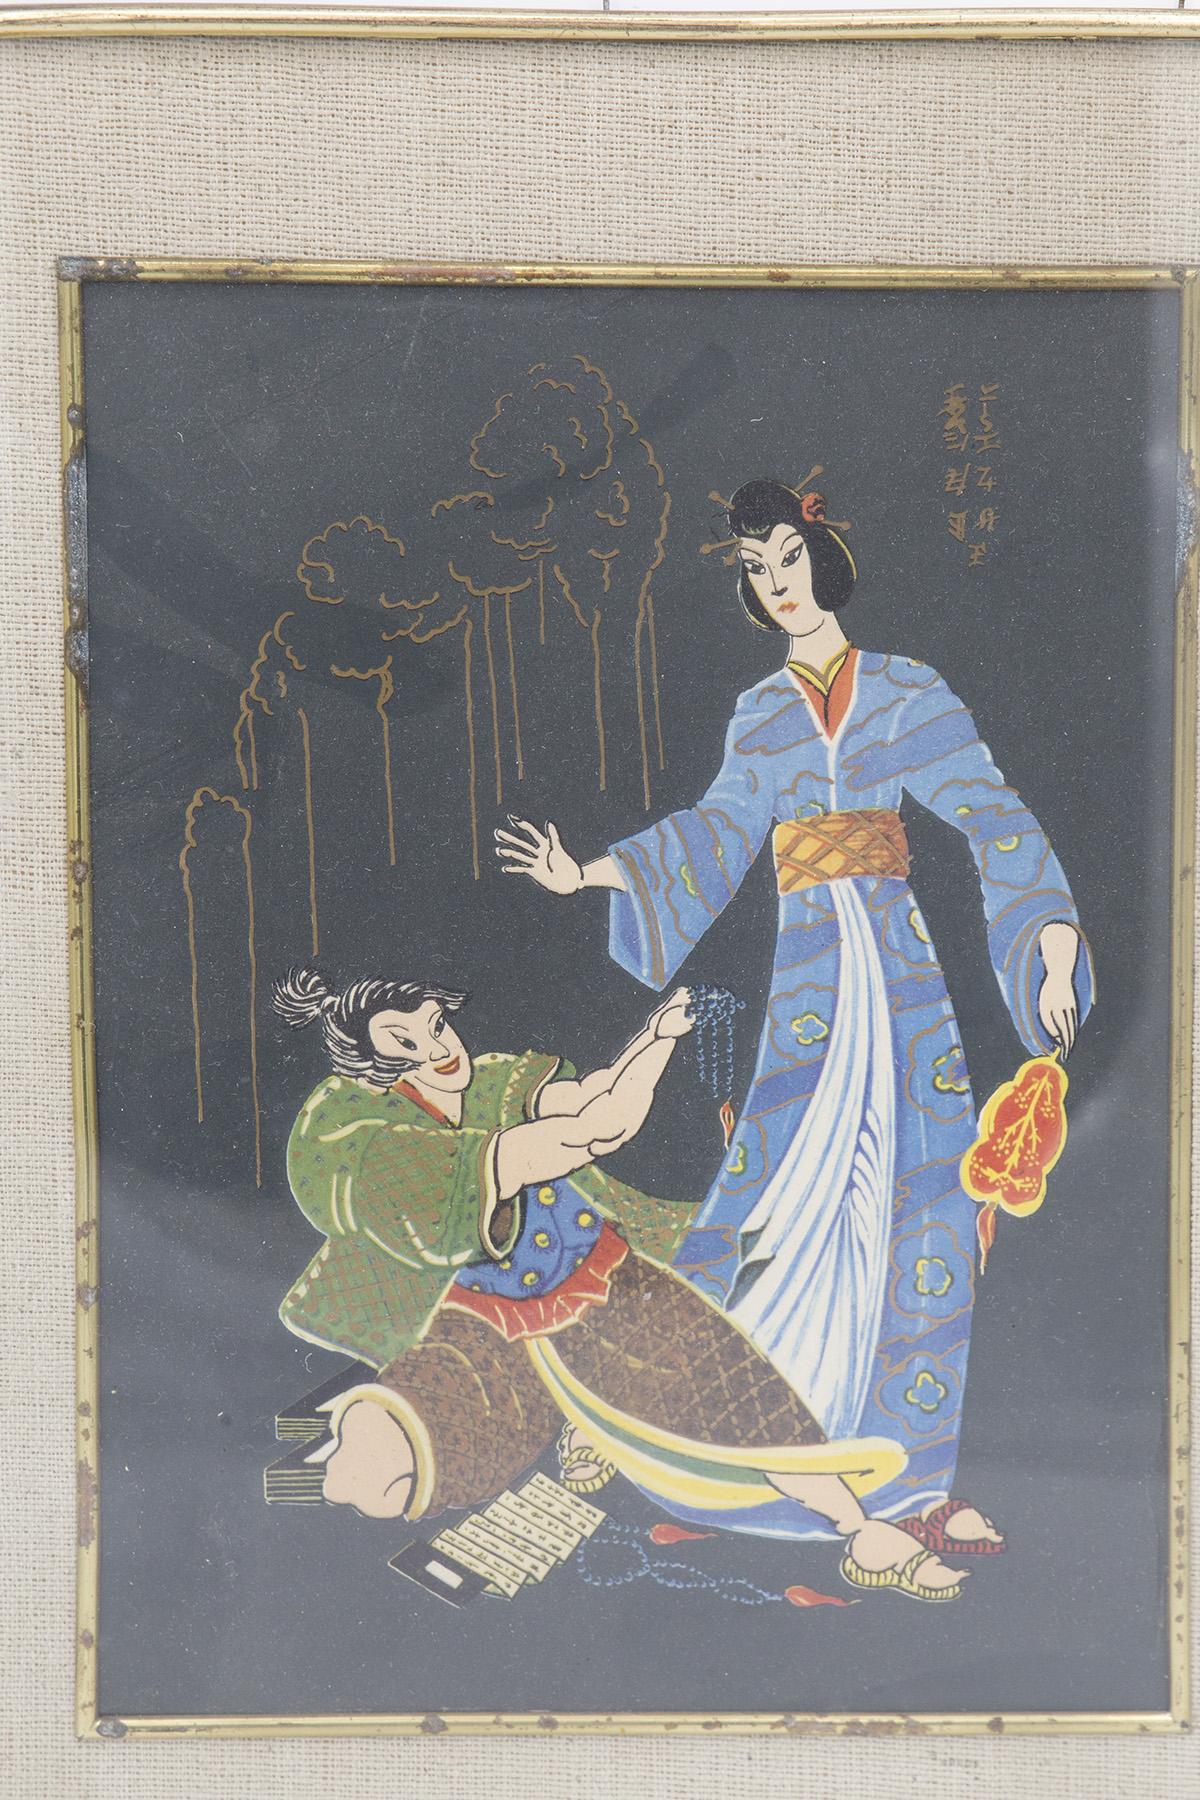 Antique et très rare peinture japonaise fabriquée au début des années 1900 par un excellent fabricant japonais.
Le tableau a un cadre rectangulaire en laiton avec des coins arrondis. À l'intérieur, nous voyons un cadre supplémentaire en jute,